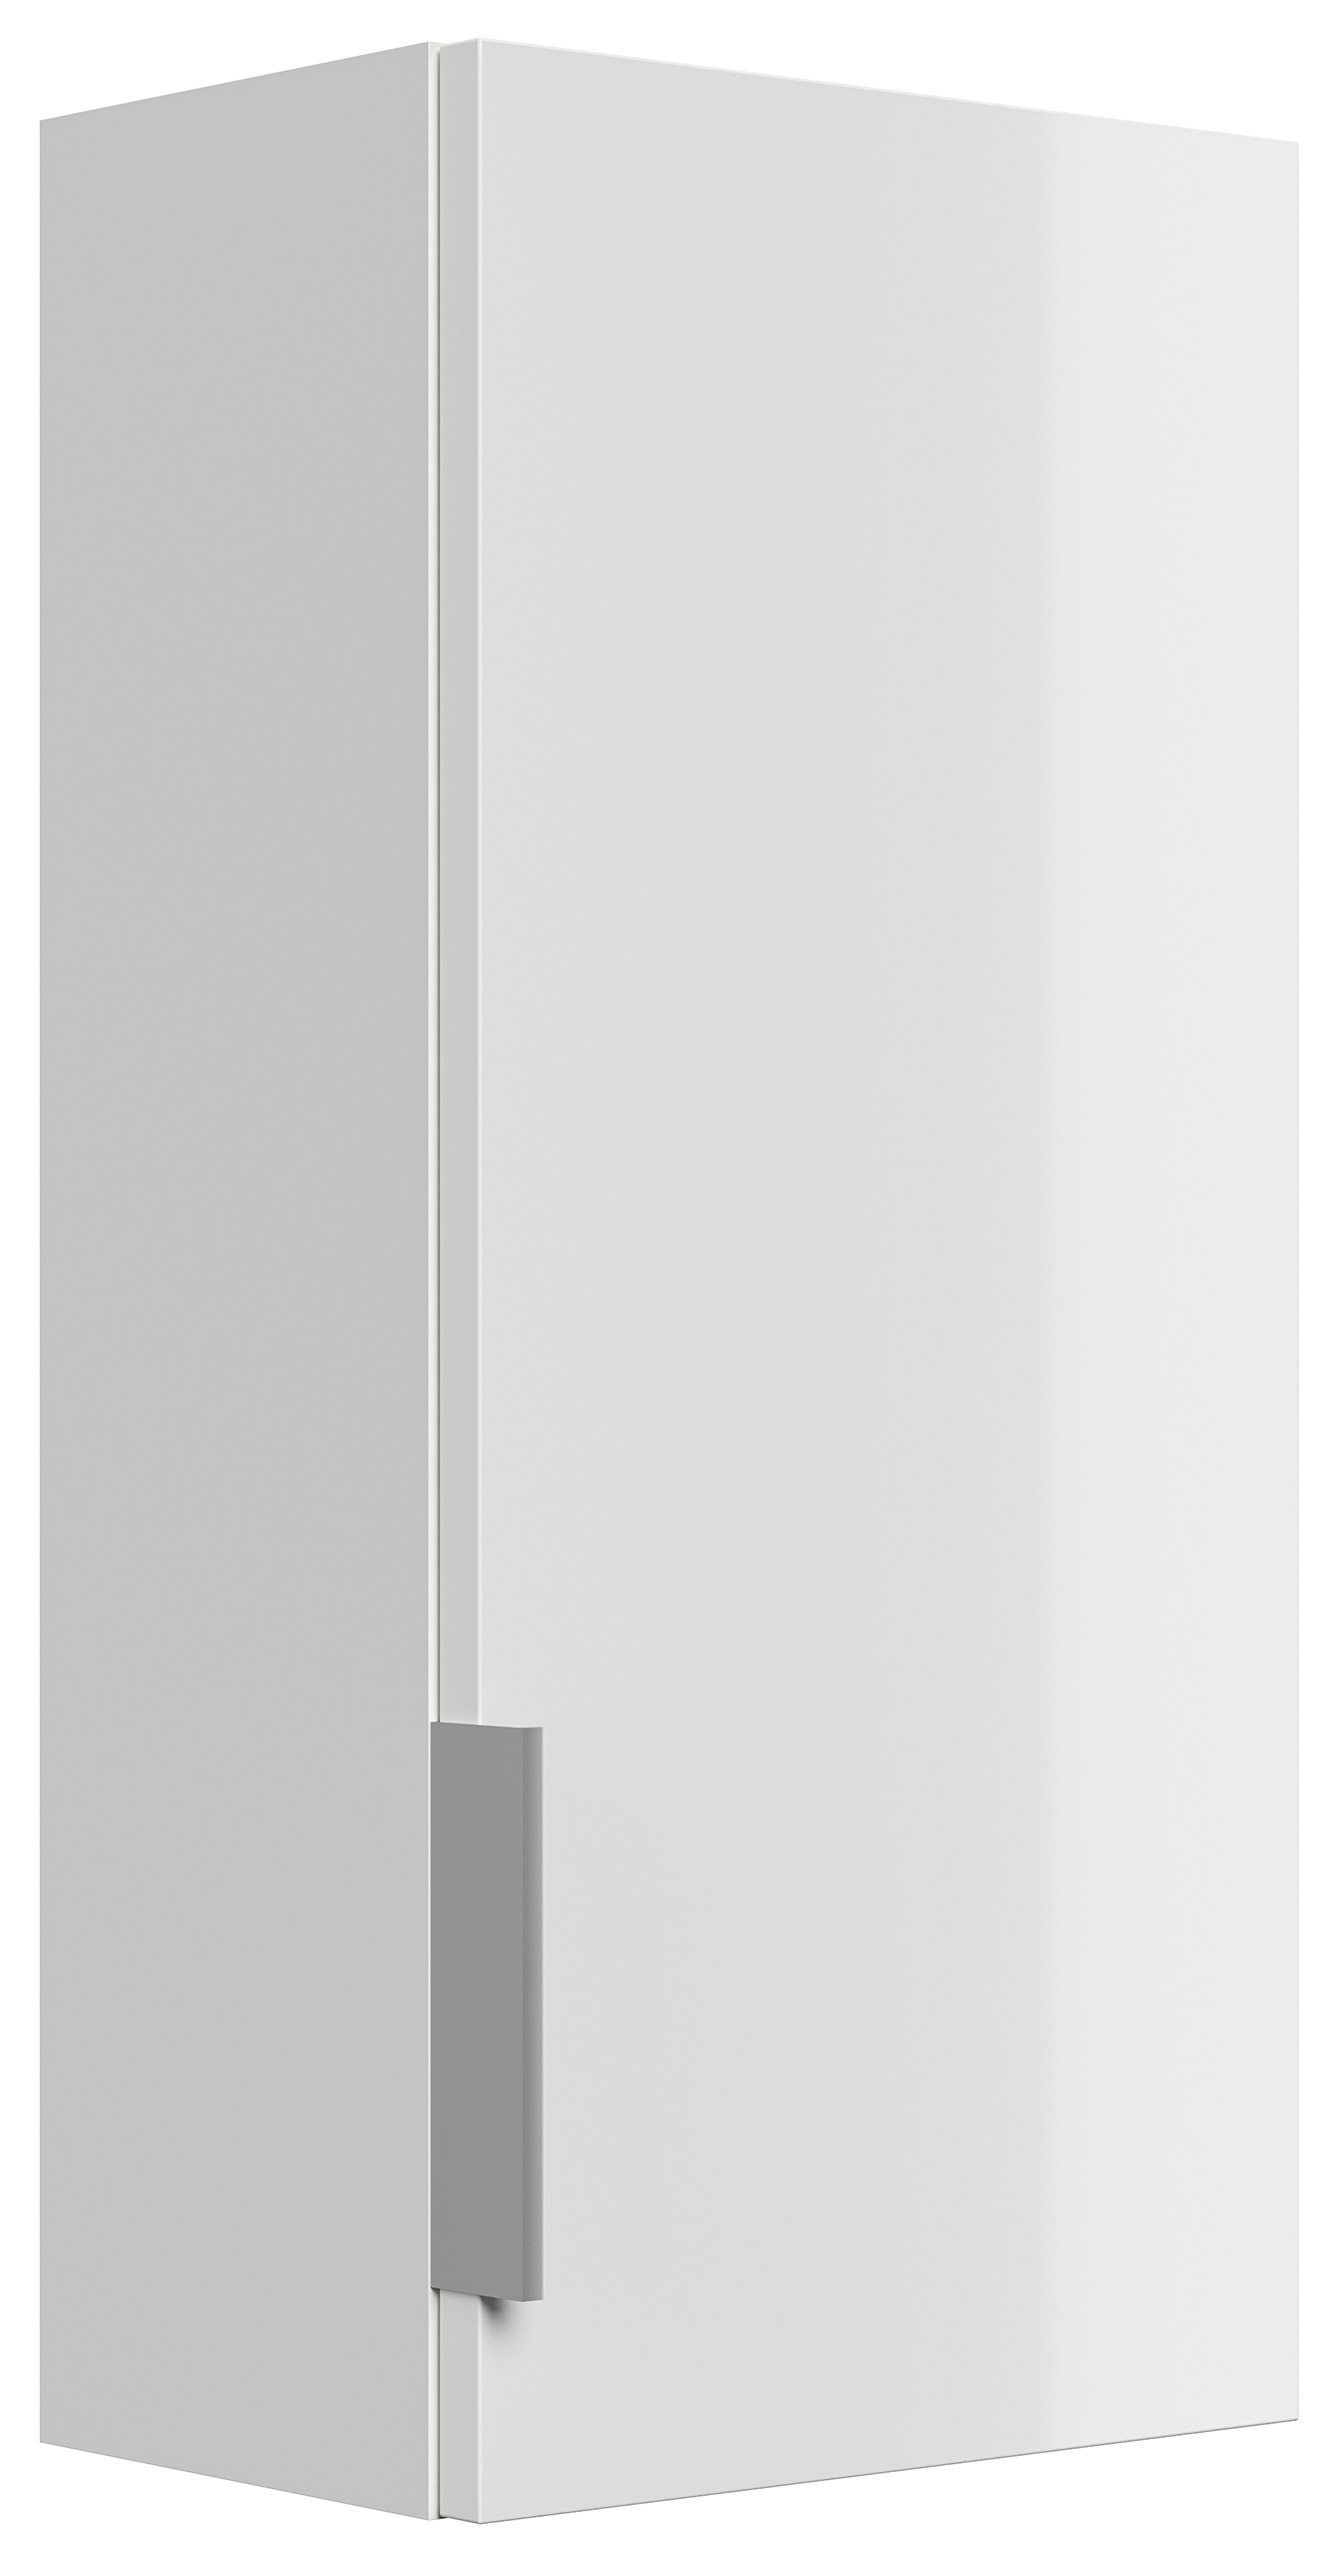 Badmöbel-Set Slimline Vega 4tlg mit Spiegel & Midischränke grafit ST/grafit matt